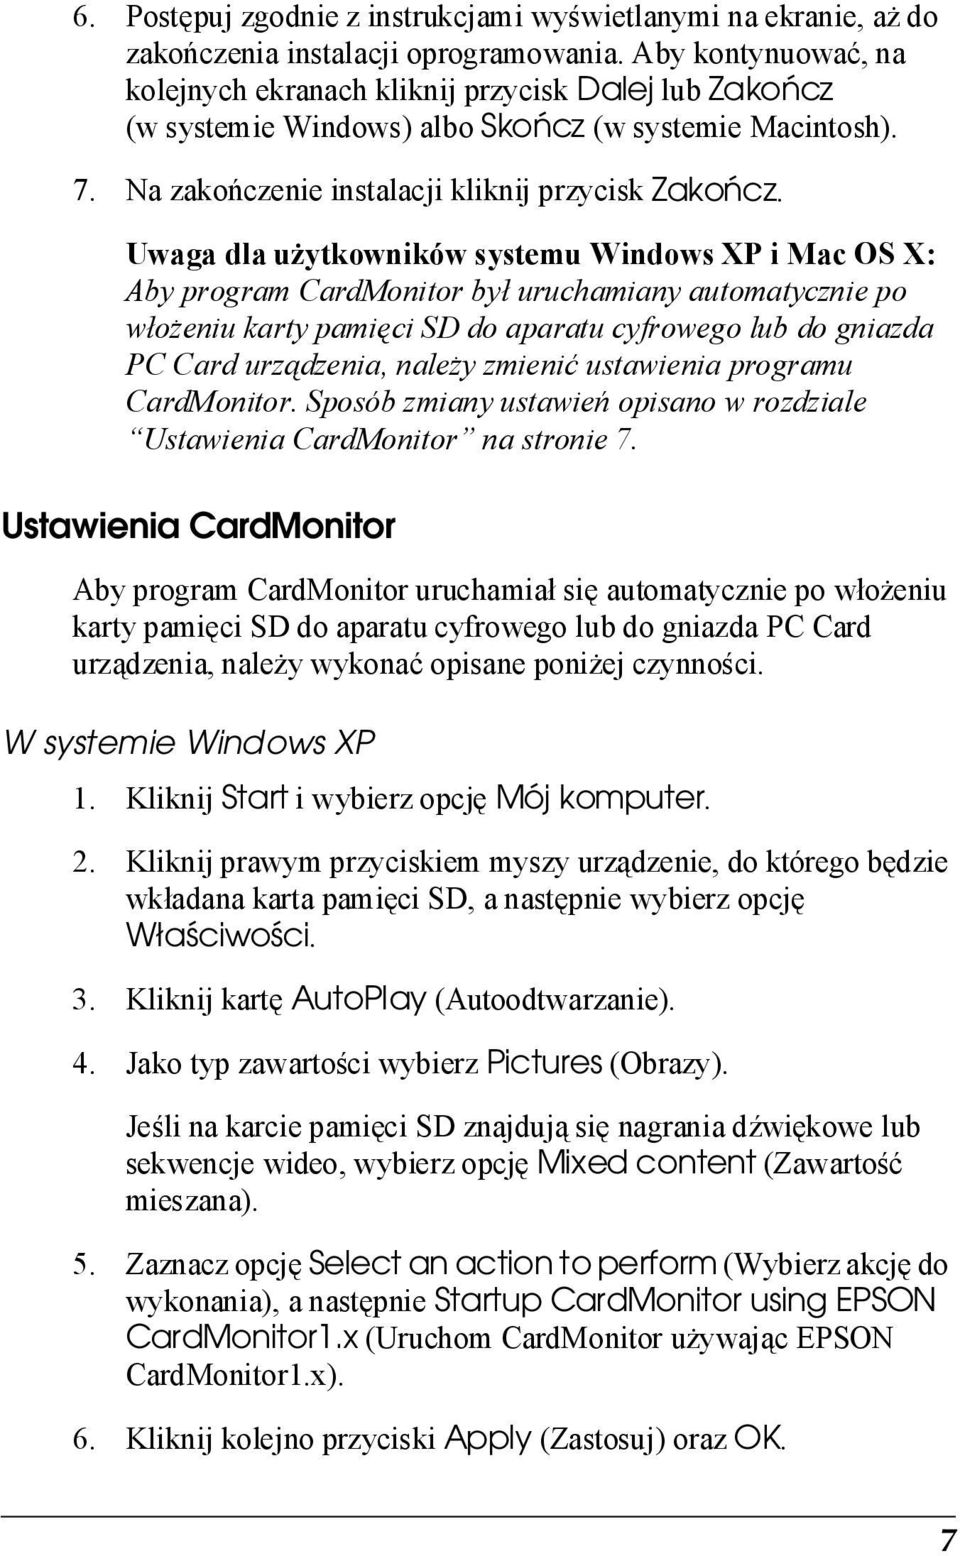 Uwaga dla użytkowników systemu Windows XP i Mac OS X: Aby program CardMonitor był uruchamiany automatycznie po włożeniu karty pamięci SD do aparatu cyfrowego lub do gniazda PC Card urządzenia, należy